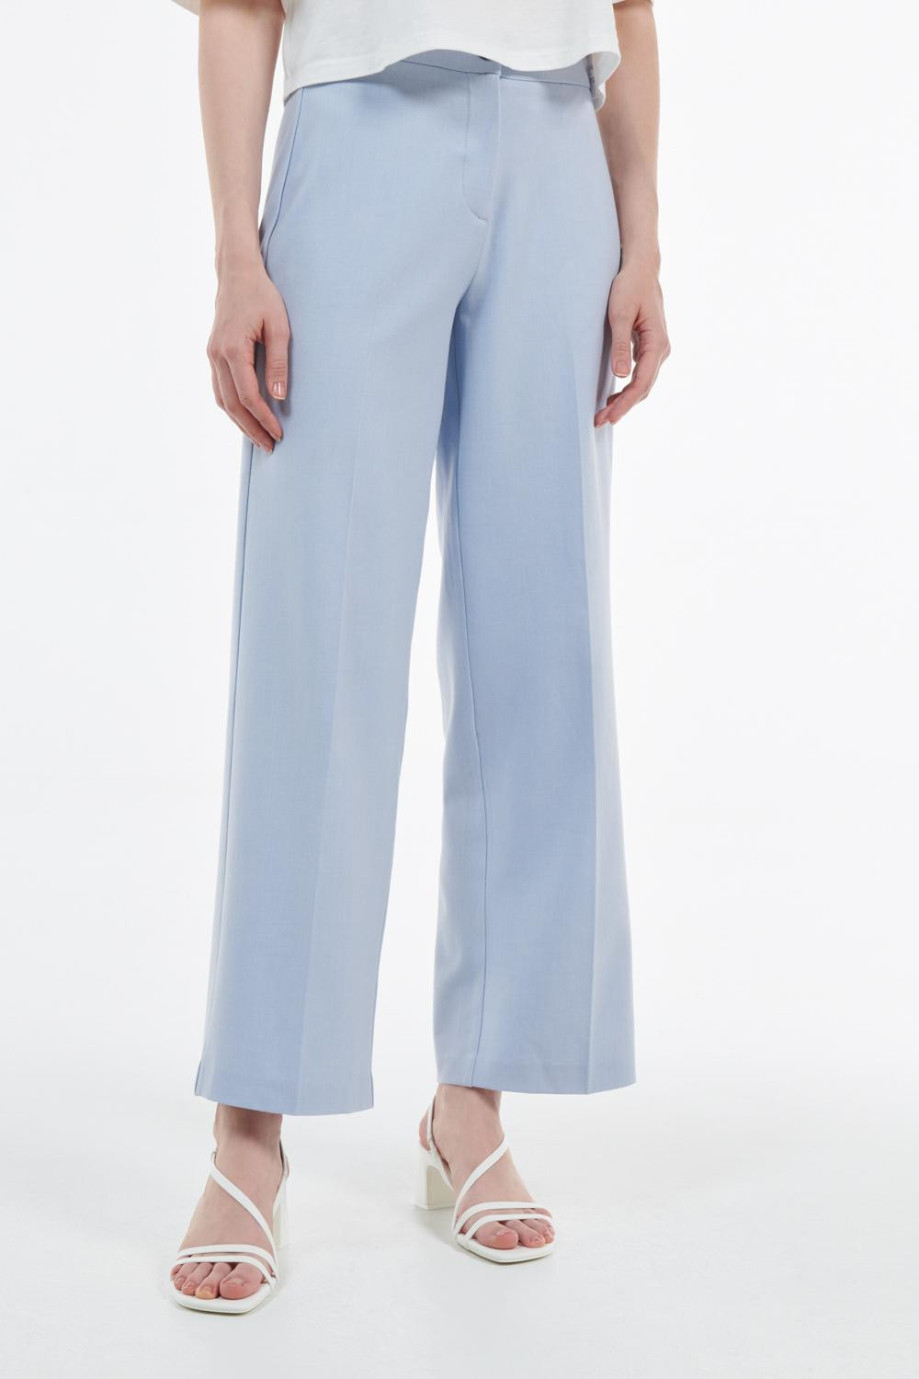 Pantalón en tela azul claro con bota recta y cierre con cremallera